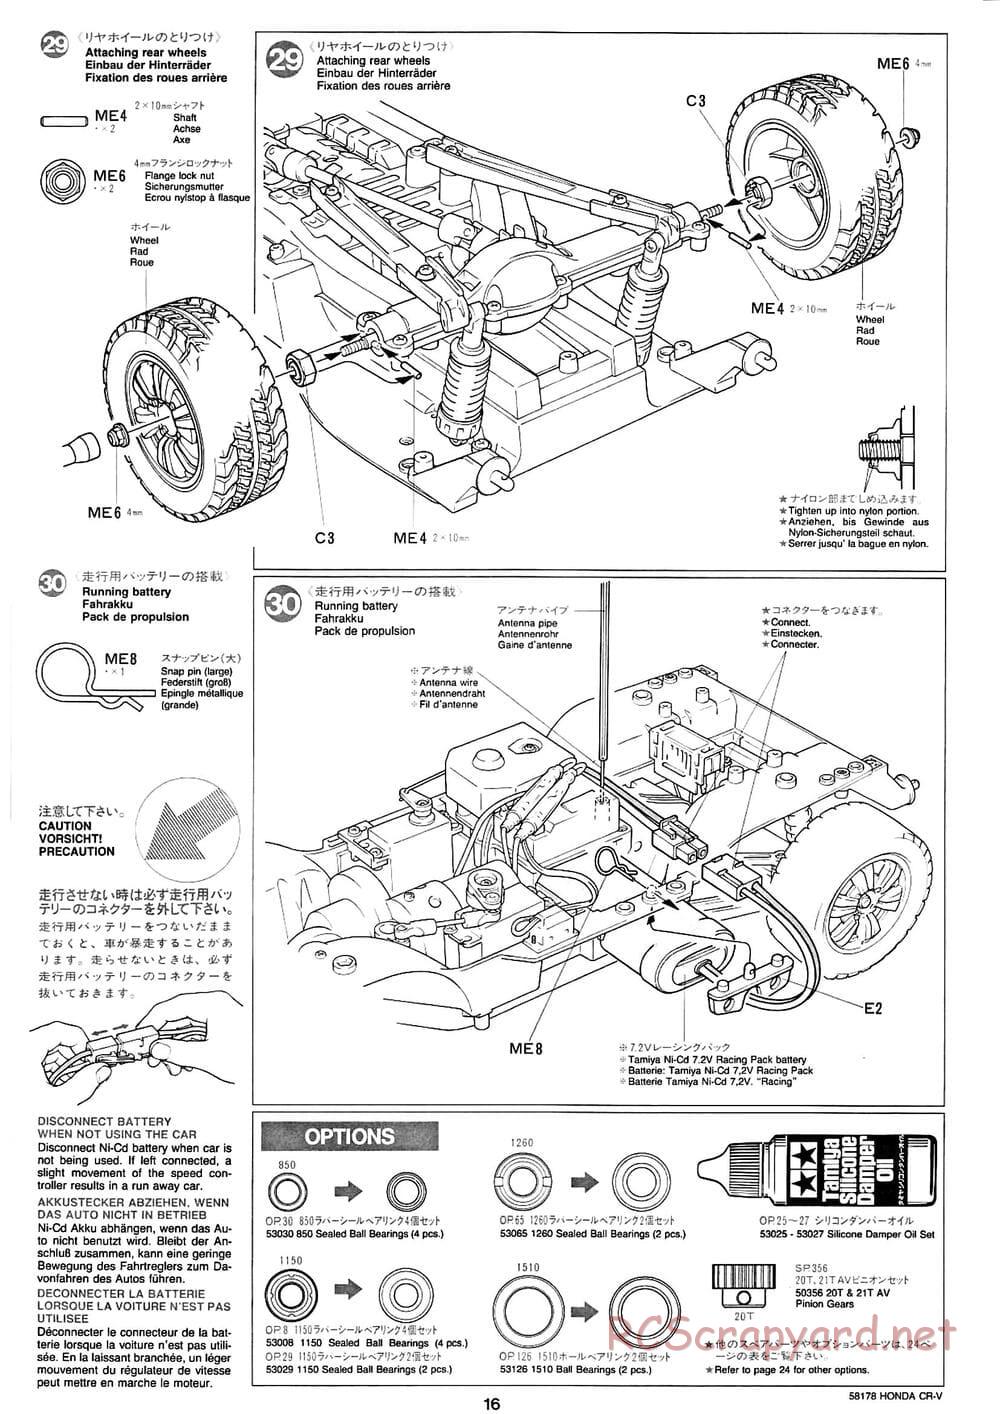 Tamiya - Honda CR-V - CC-01 Chassis - Manual - Page 16